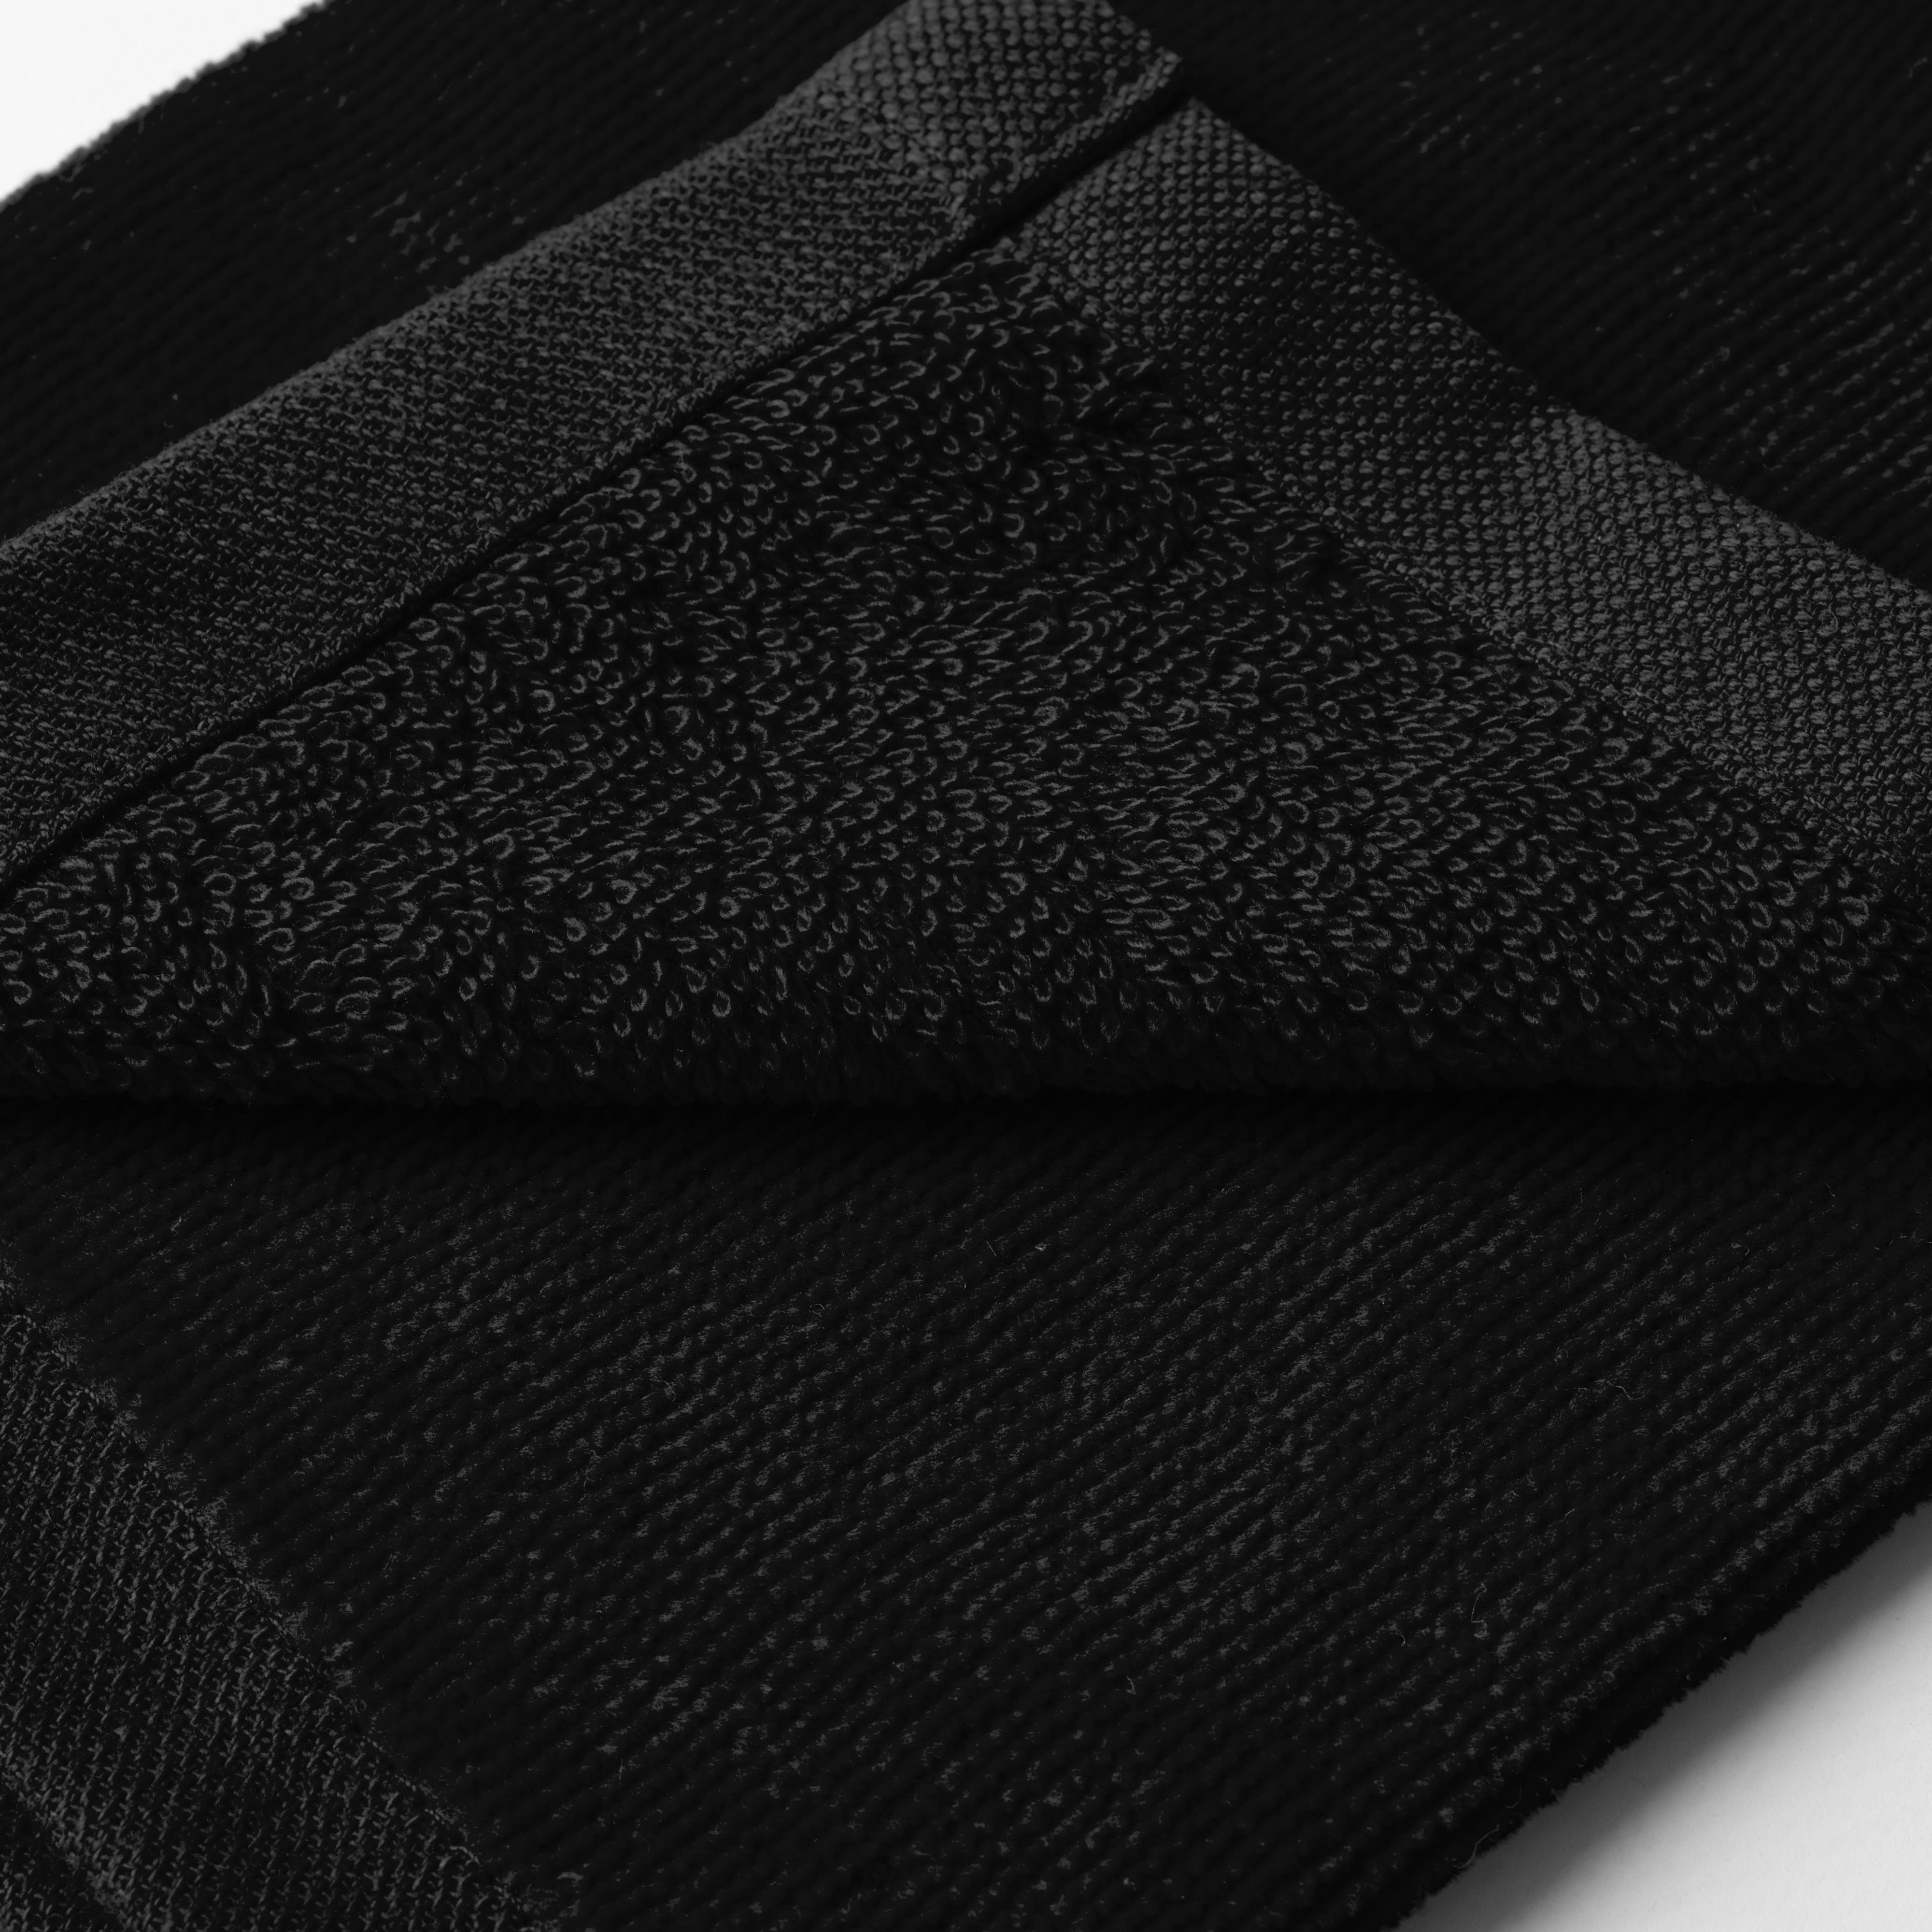 Tri-Fold Golf Towel - Inesis Black - INESIS